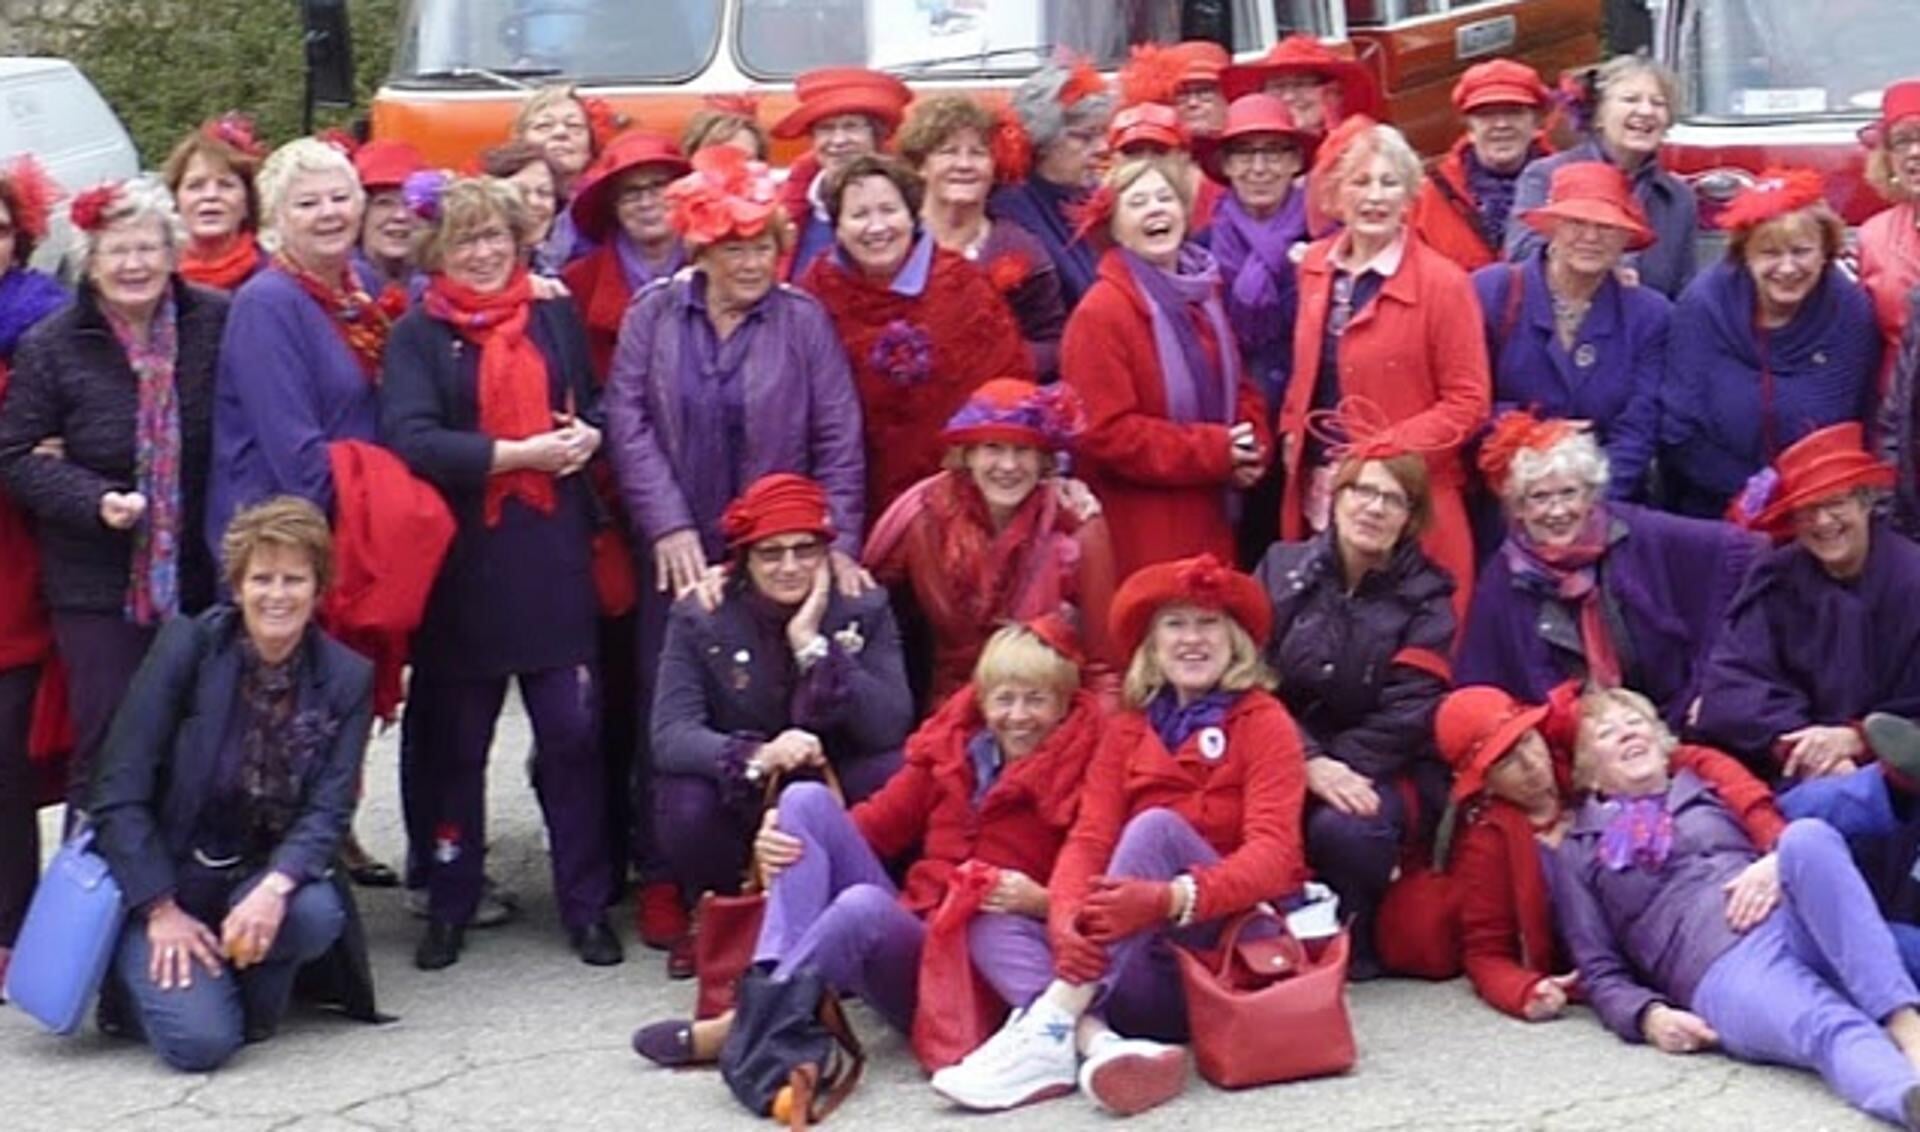 De dames kleden zich altijd in het paars en rood.